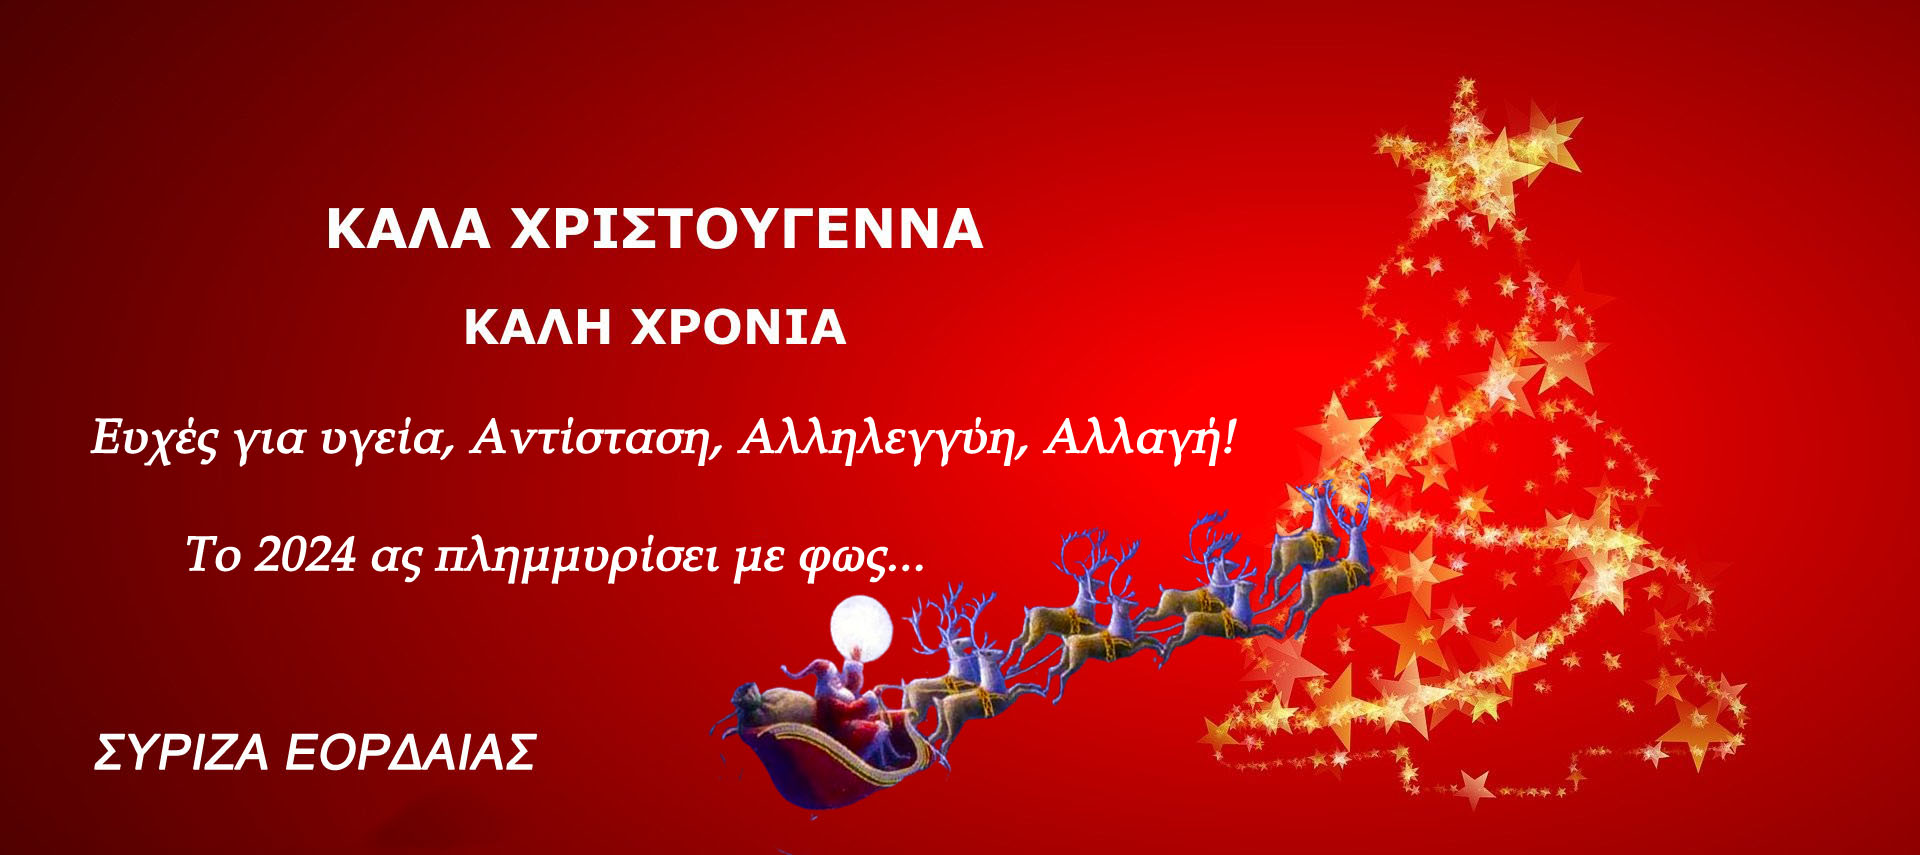 Ο ΣΥΡΙΖΑ ΕΟΡΔΑΙΑΣ σας εύχεται Χρόνια Πολλά! - Ευτυχές το νέο Έτος!